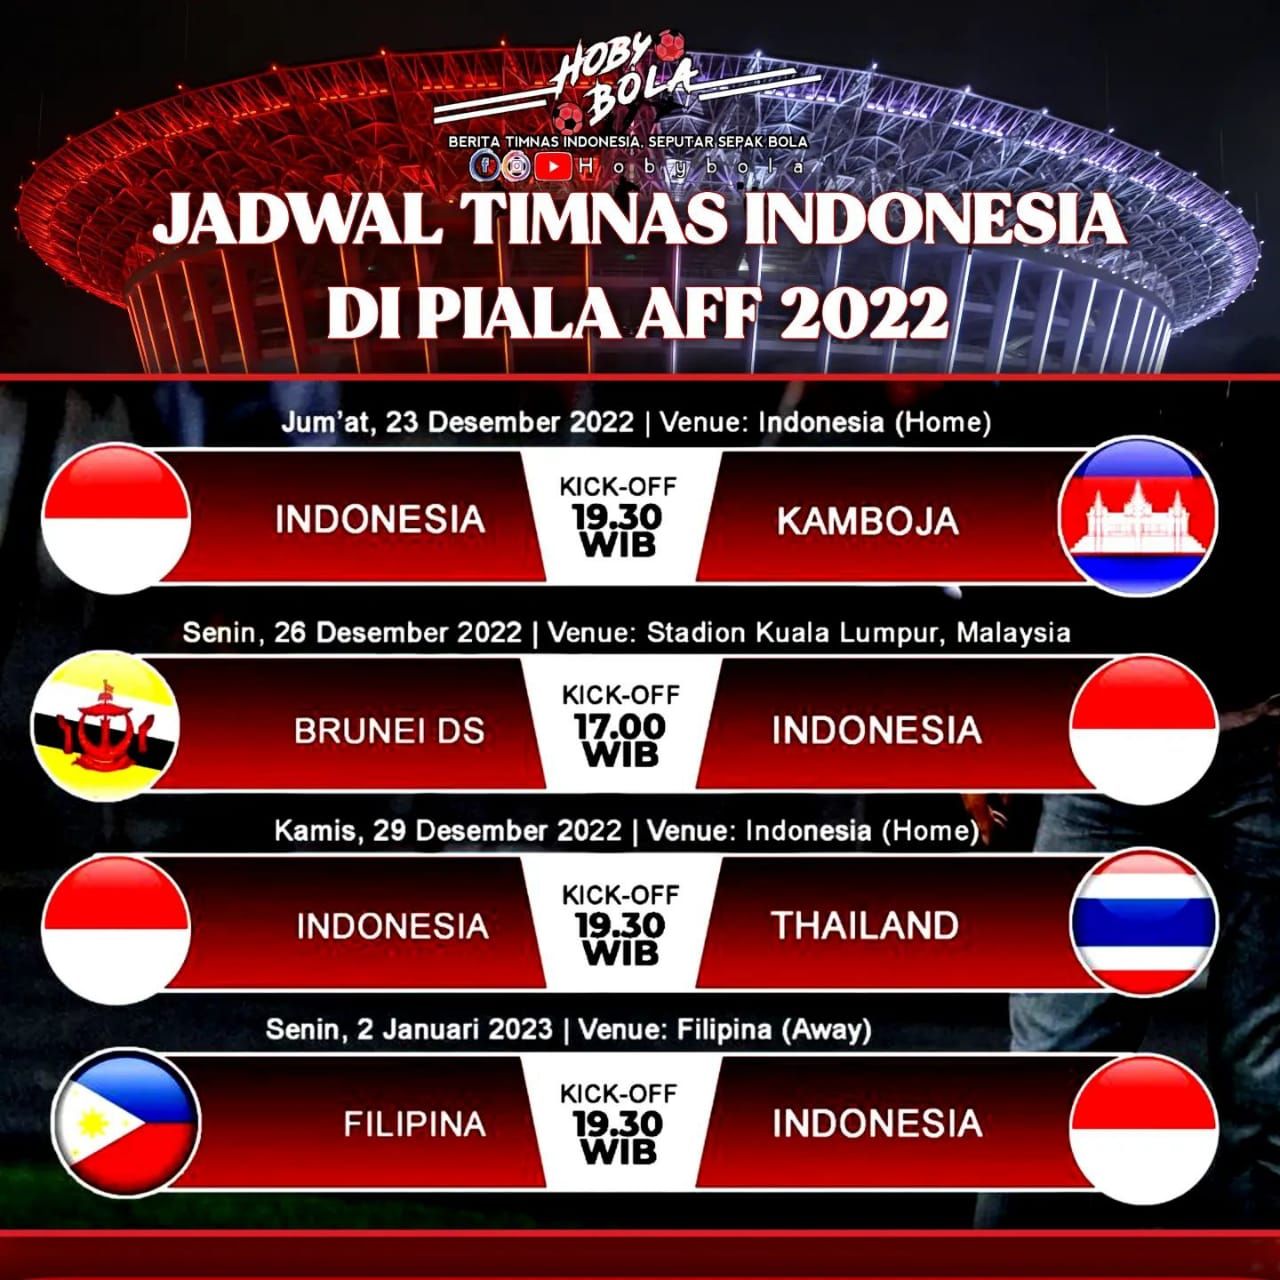 Jadwal Timnas Indonesia di Piala AFF 2022 